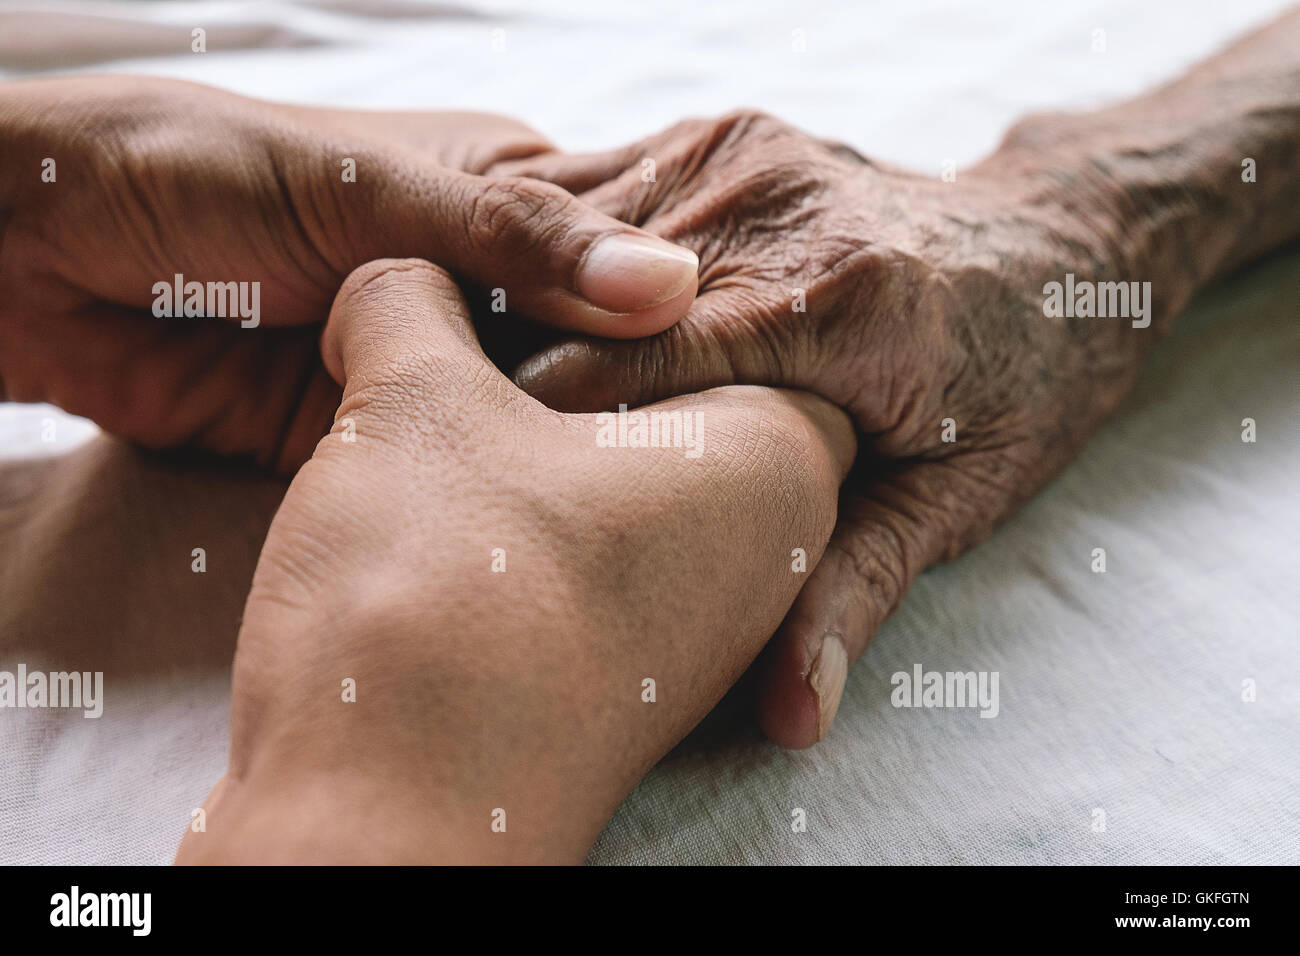 Hände von dem alten Mann und ein junger Mann auf einem weißen Bett in einem Krankenhaus. Stockfoto